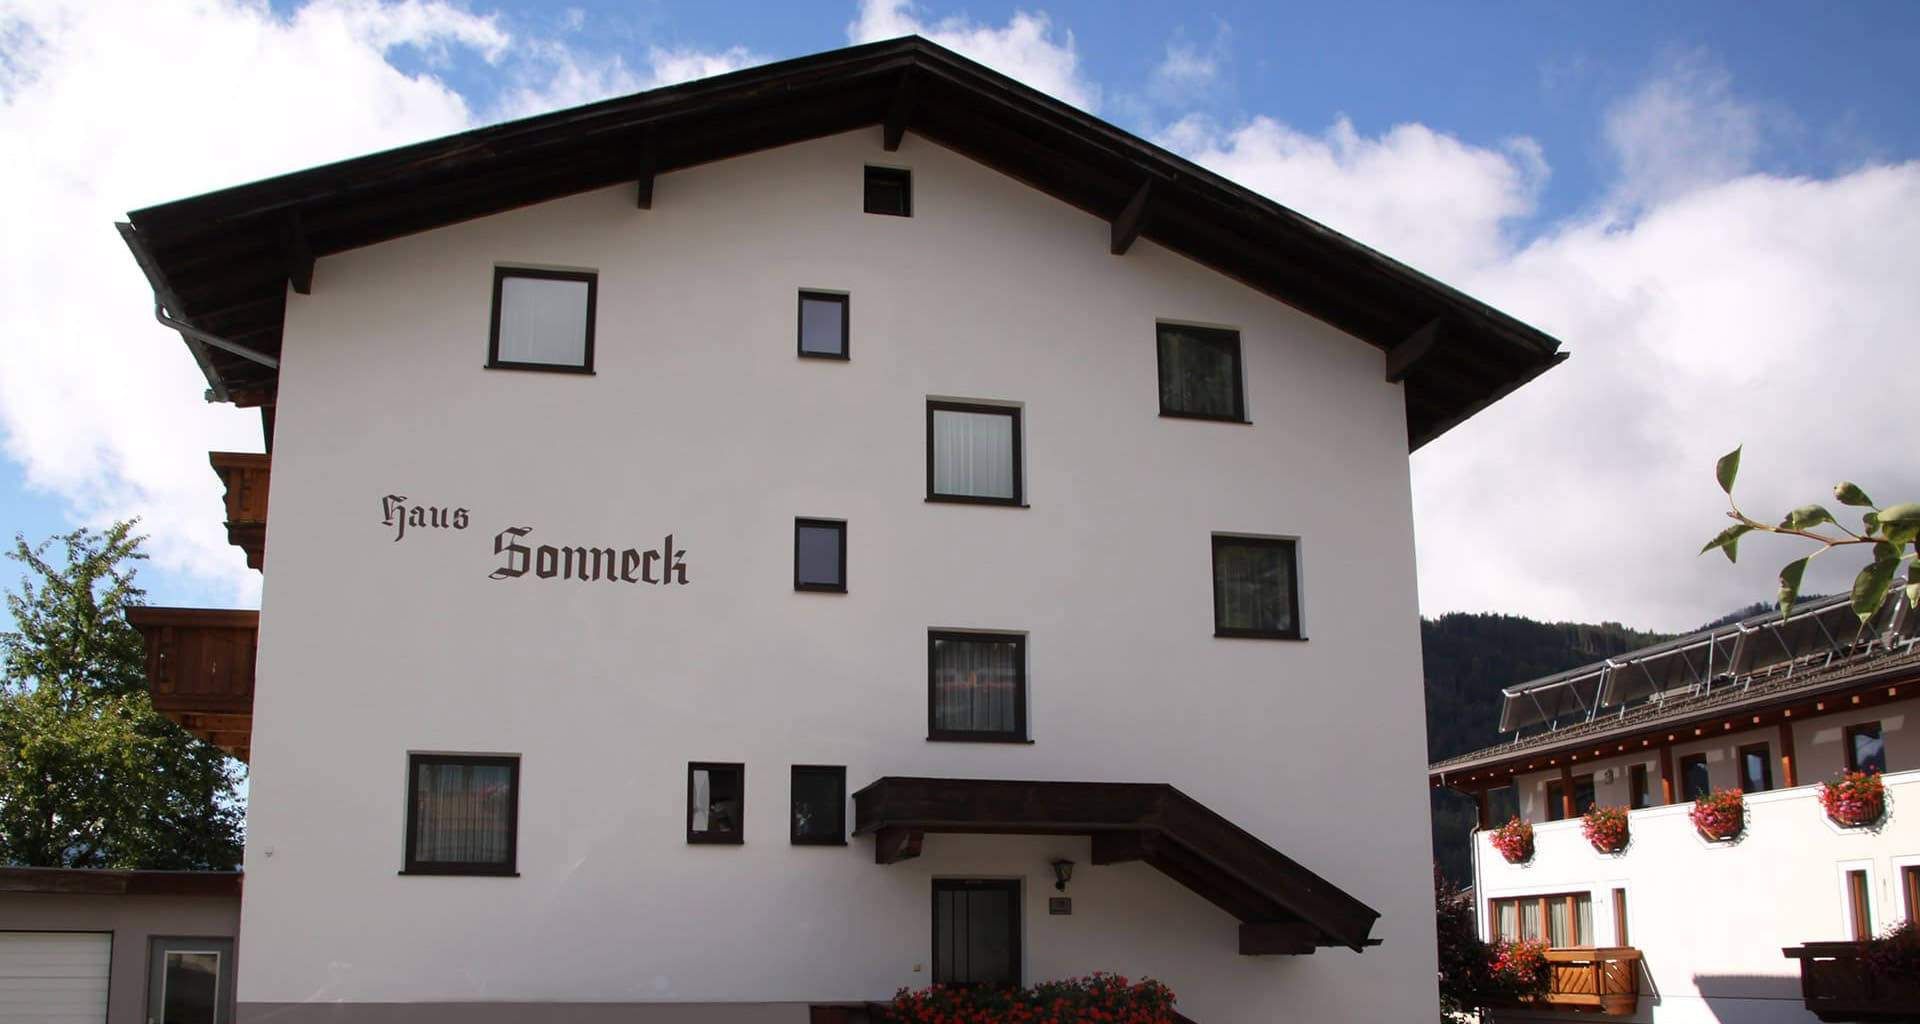 Urlaub im Haus Sonneck in Serfaus Tirol